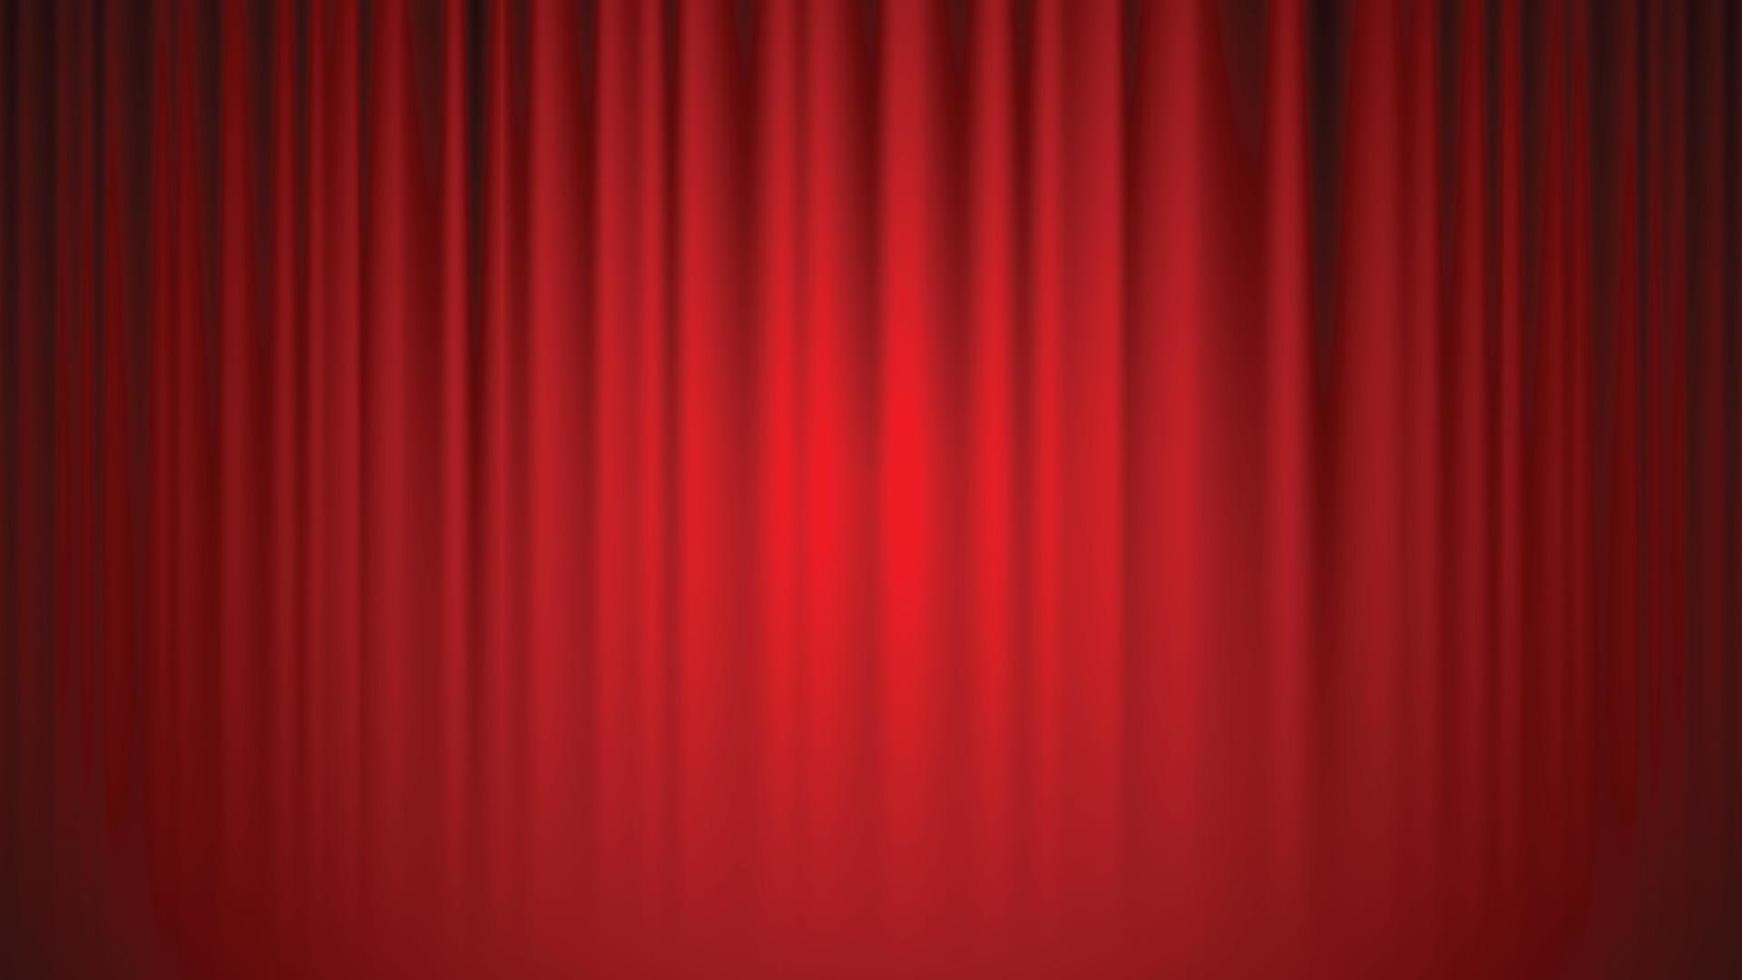 teatro cinema cortinas fundo de cortinas vermelhas iluminado por um feixe de holofotes. ilustração vetorial. vetor